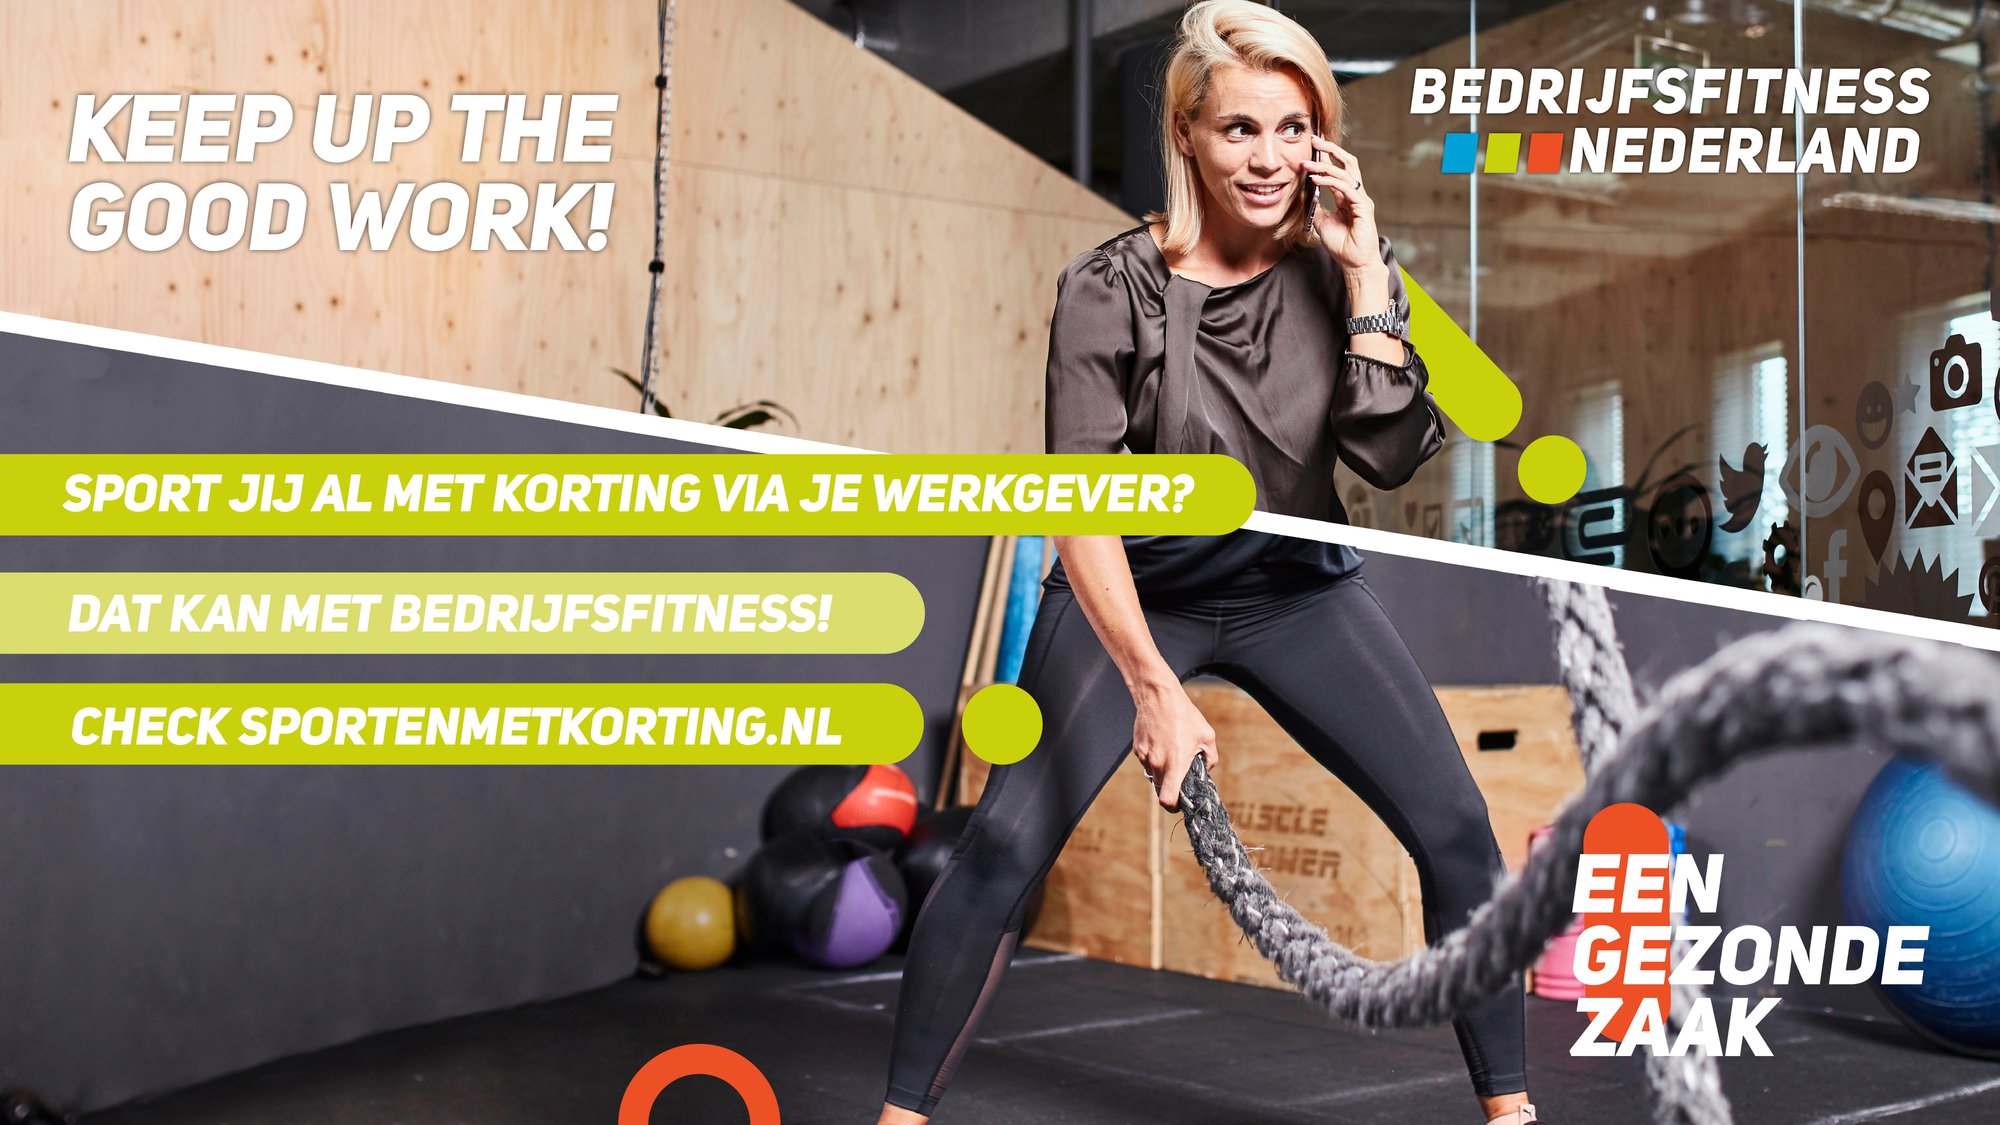 Beeldschermadvertentie sportlocatie - Bedrijfsfitness Nederland (battle ropes)